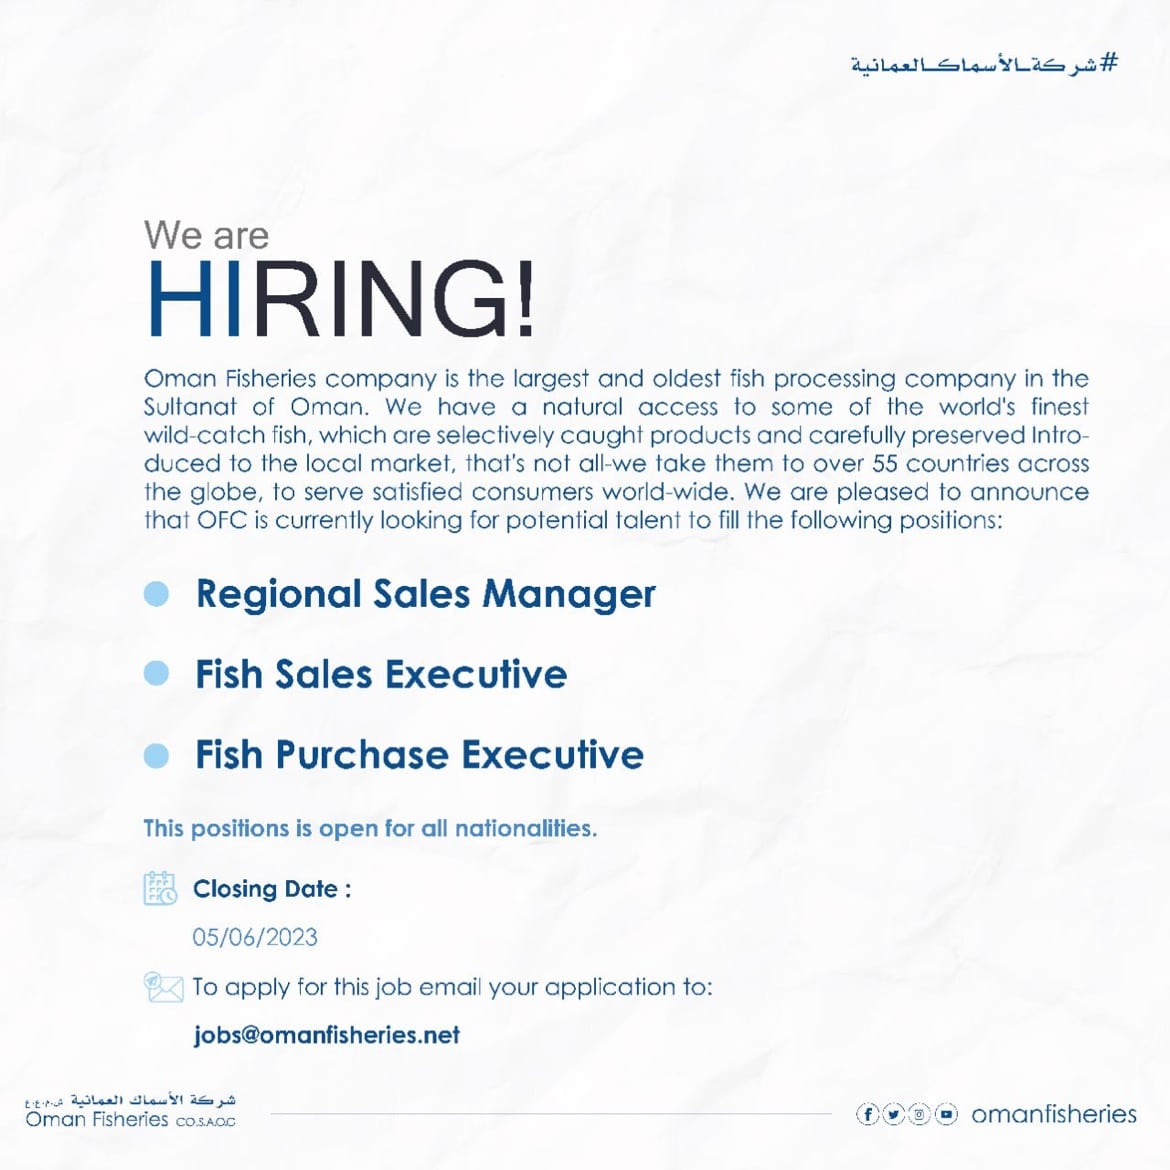 شركة الاسماك العمانية تعلن عن (وظائف شاغرة ) برواتب ومزايا عالية لجميع الجنسيات ''Oman Fisheries''